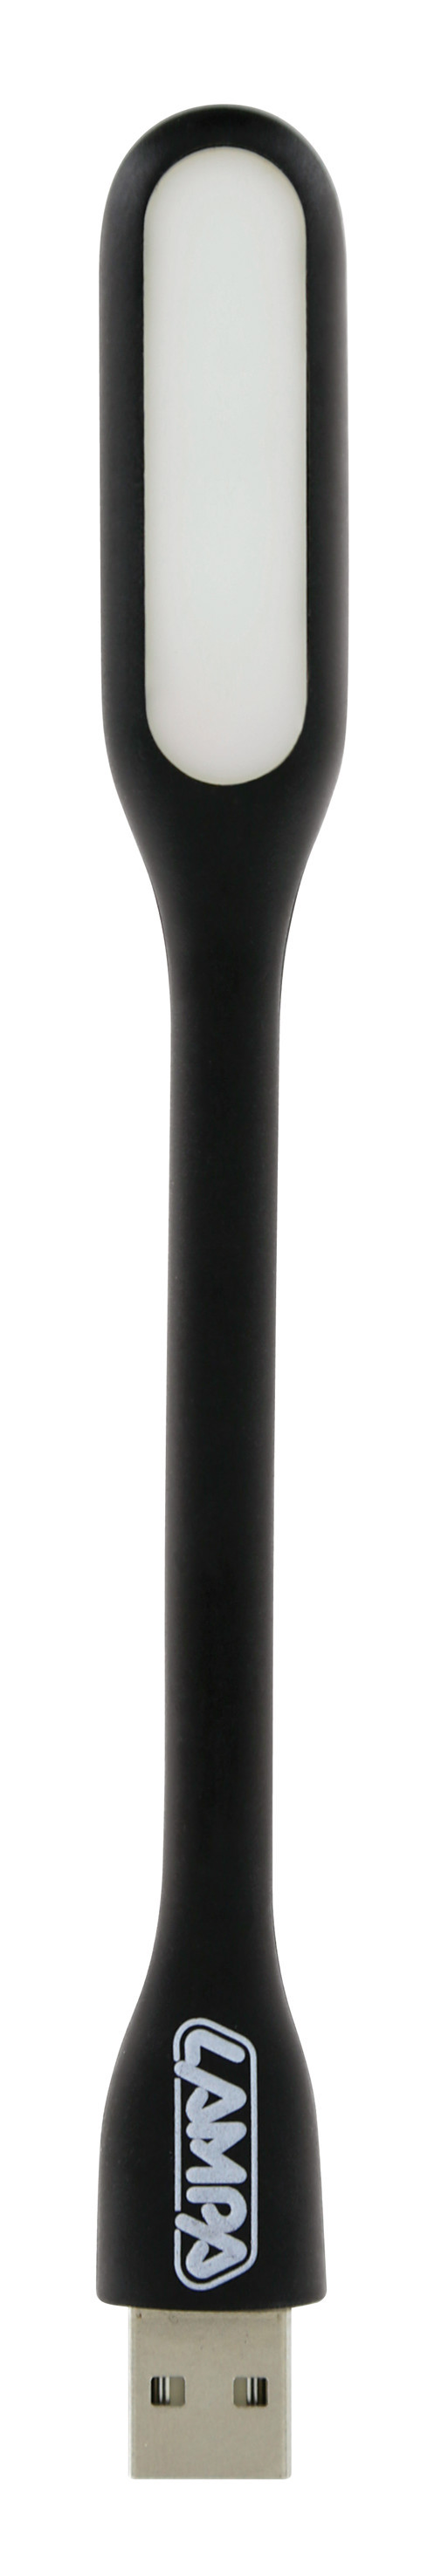 COB-LED flexible light + USB charger 12/24V thumb